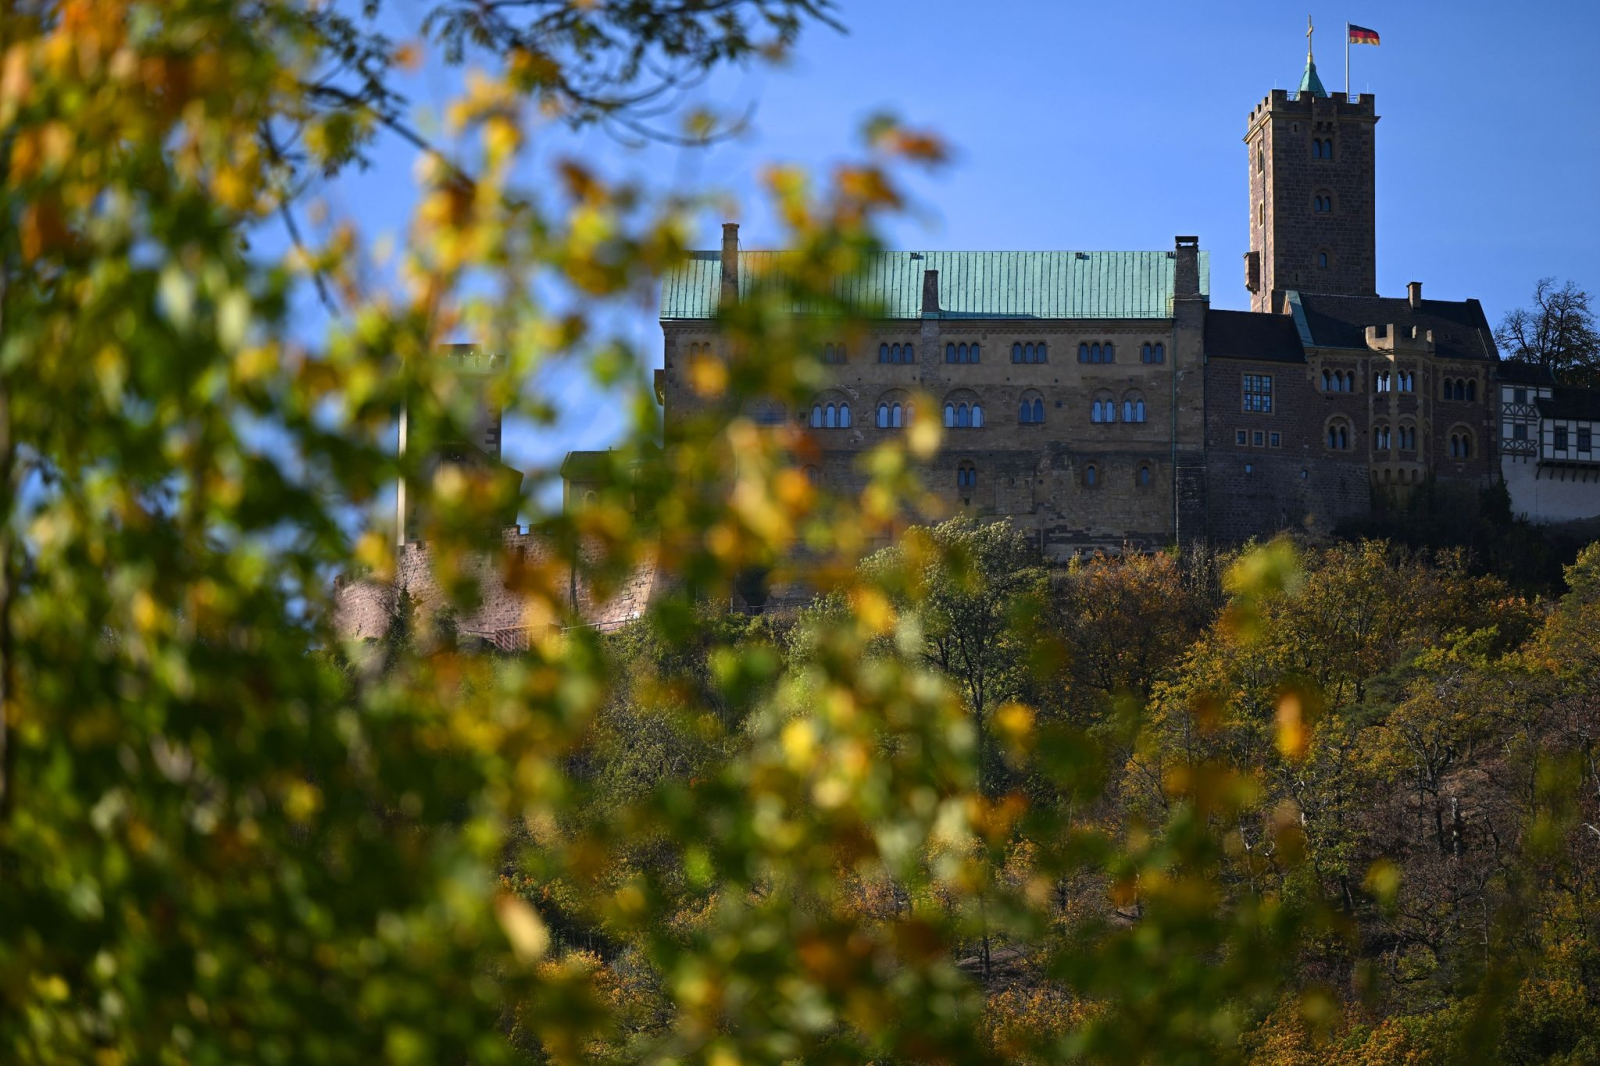 Herbstlich färbt sich das Laub der Bäume an der Wartburg bei Eisenach.